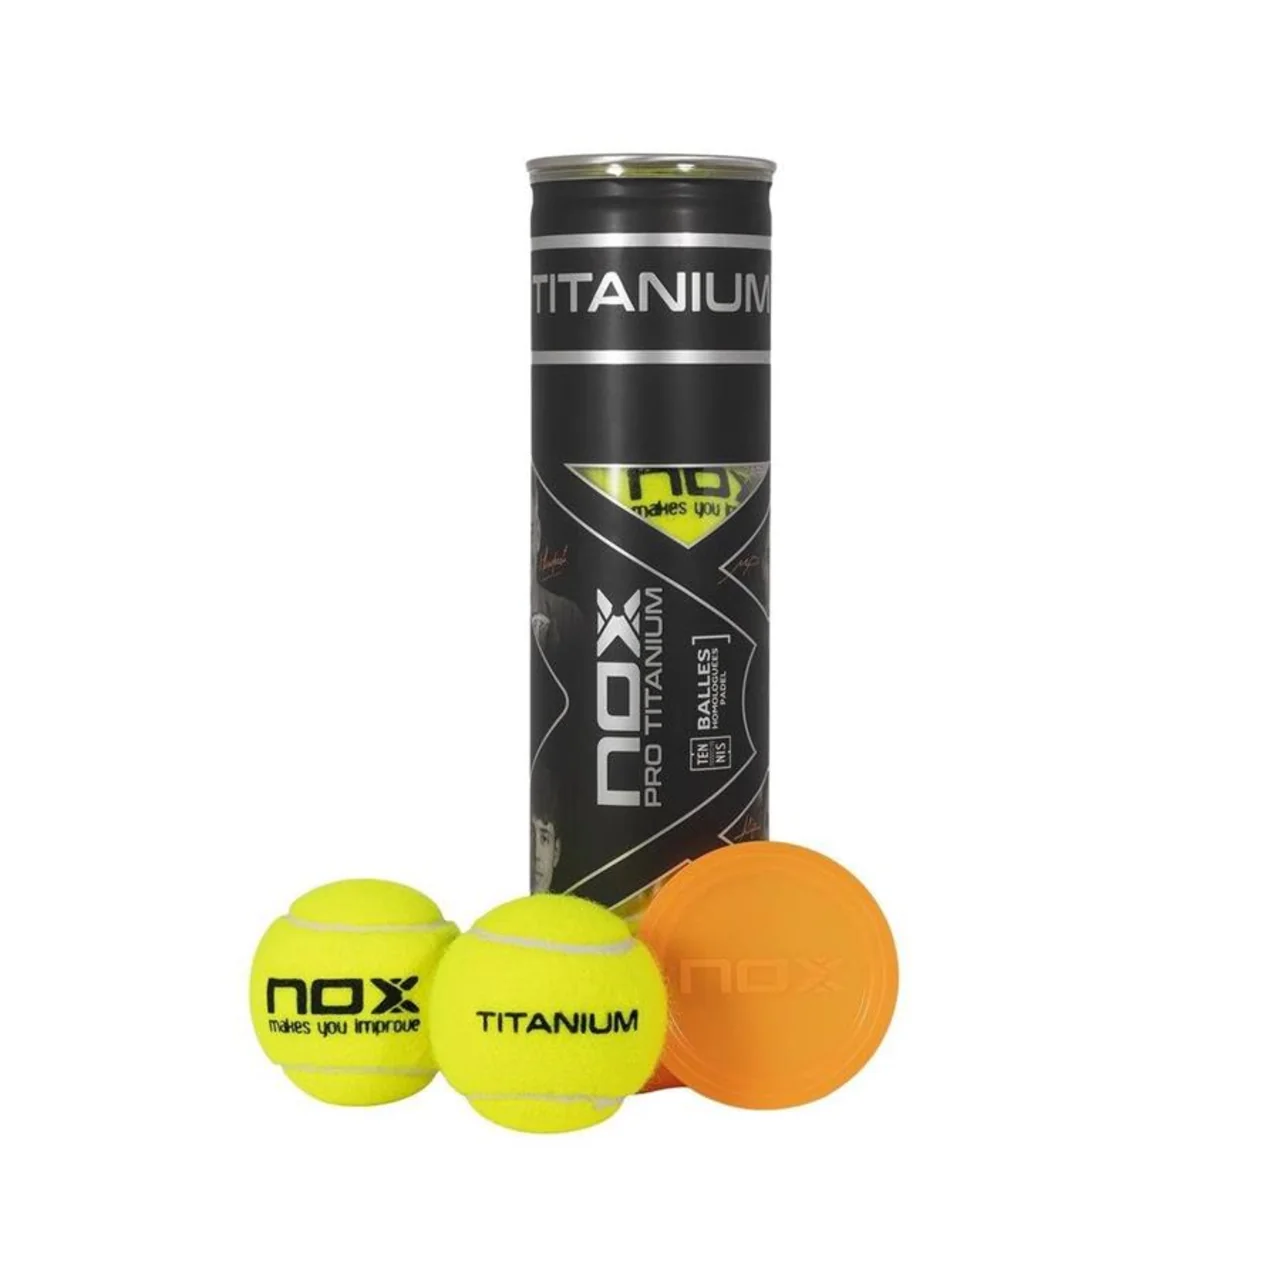 Nox Pro Titanium 4 Balls 12 tubes